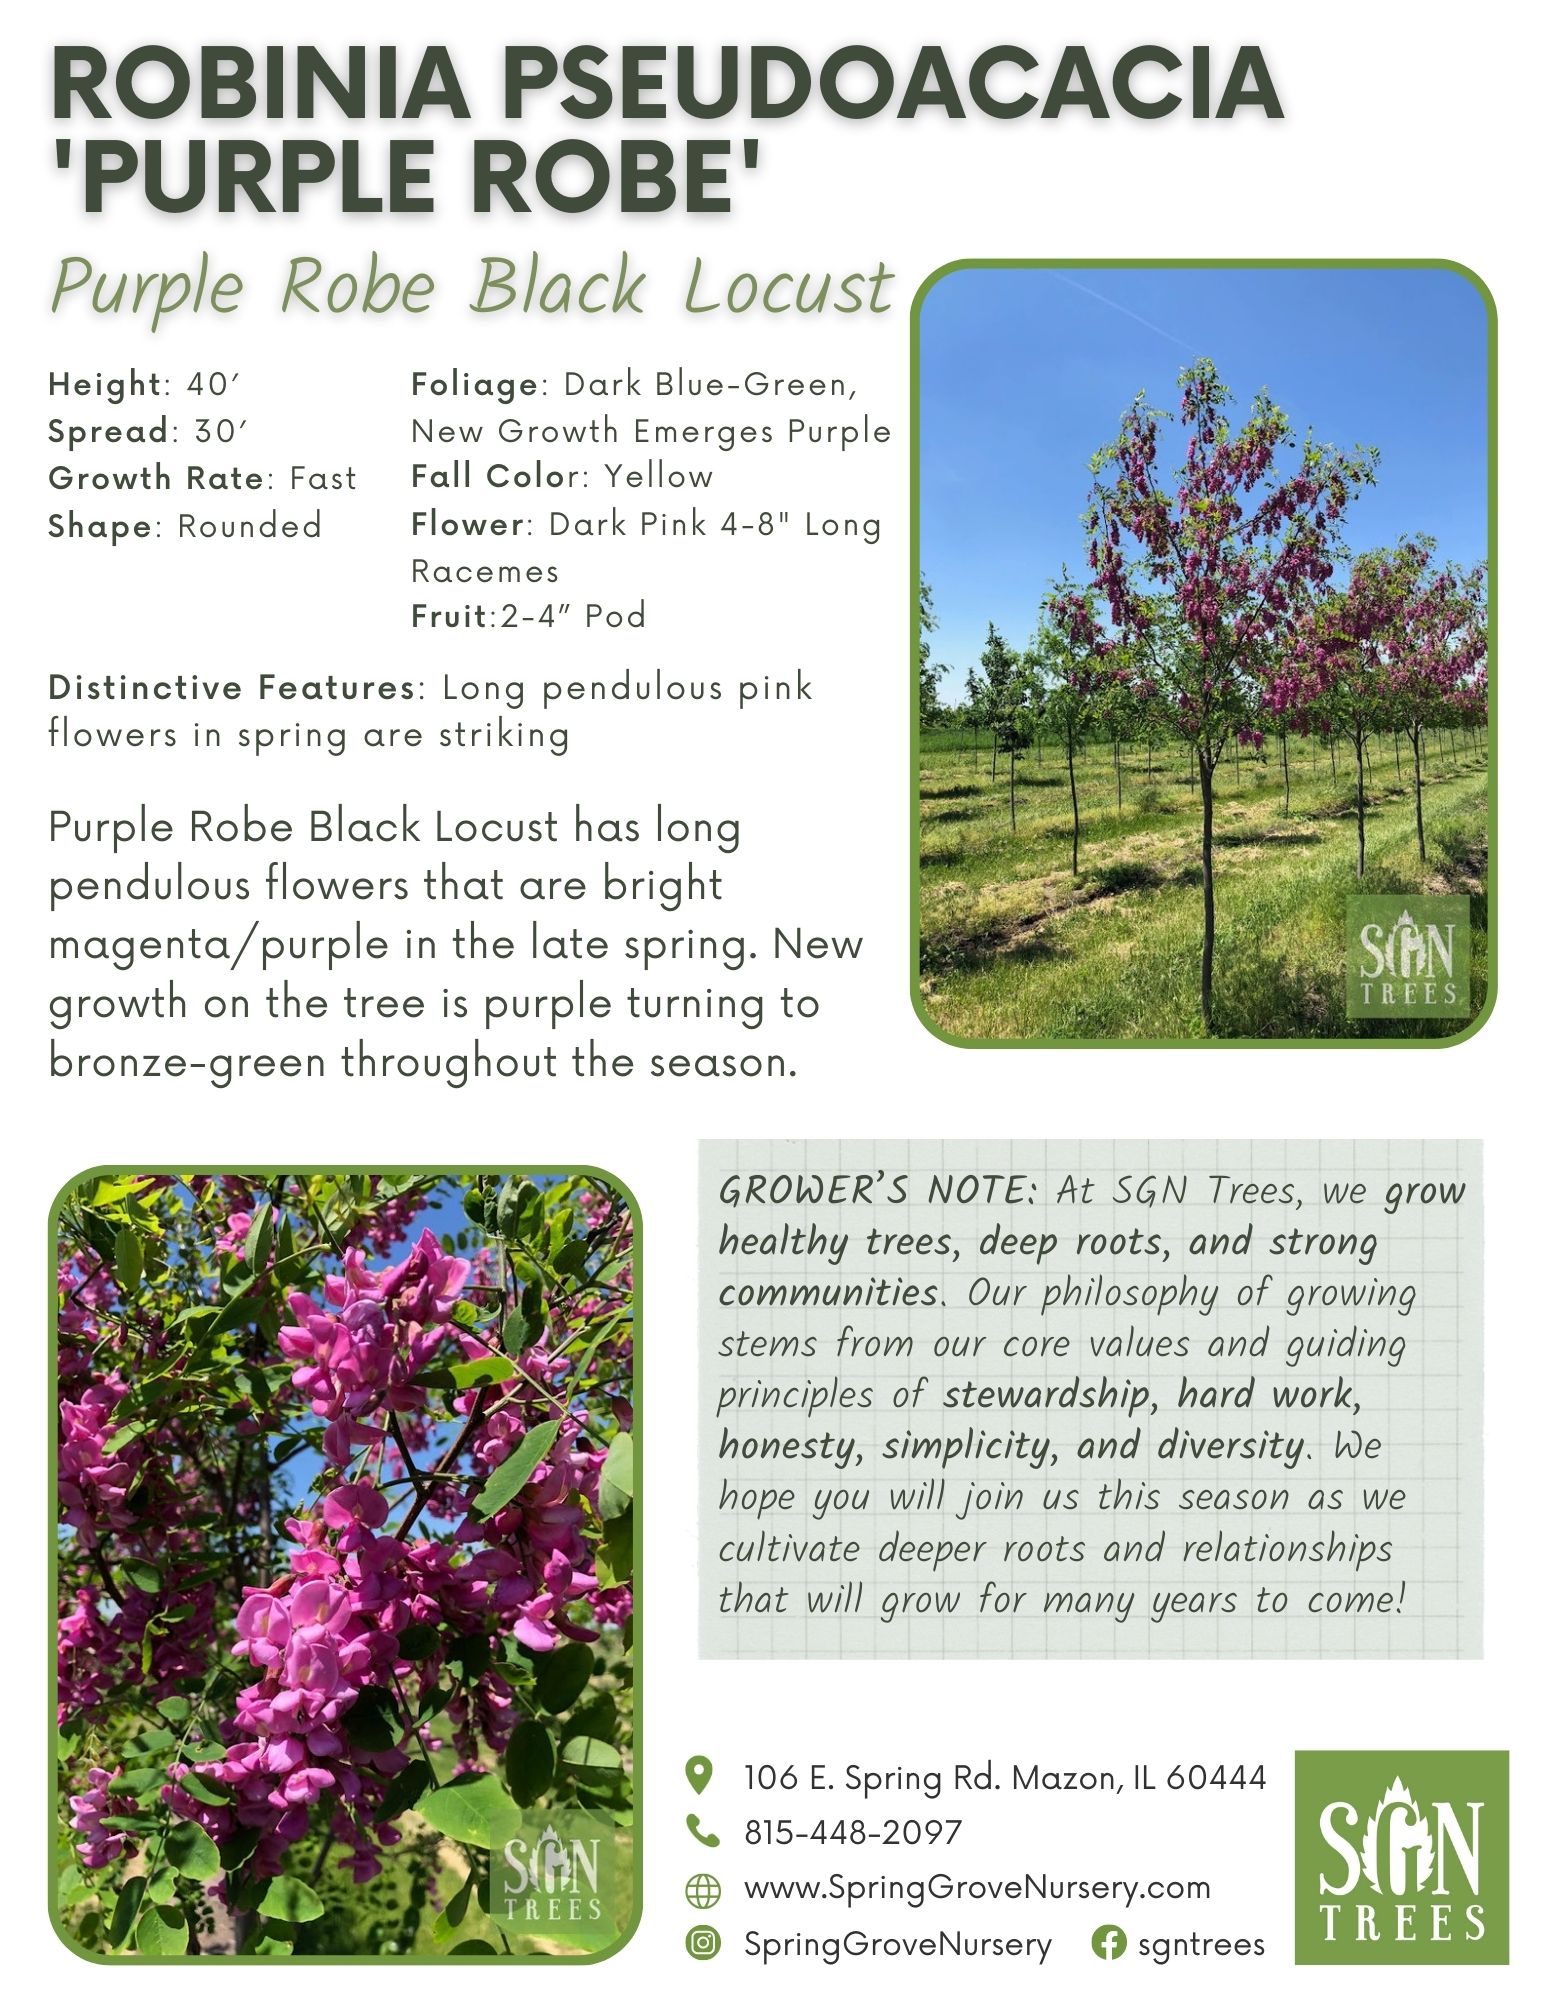 Robinia pseudoacacia 'Purple Robe' - Spring Grove Nursery